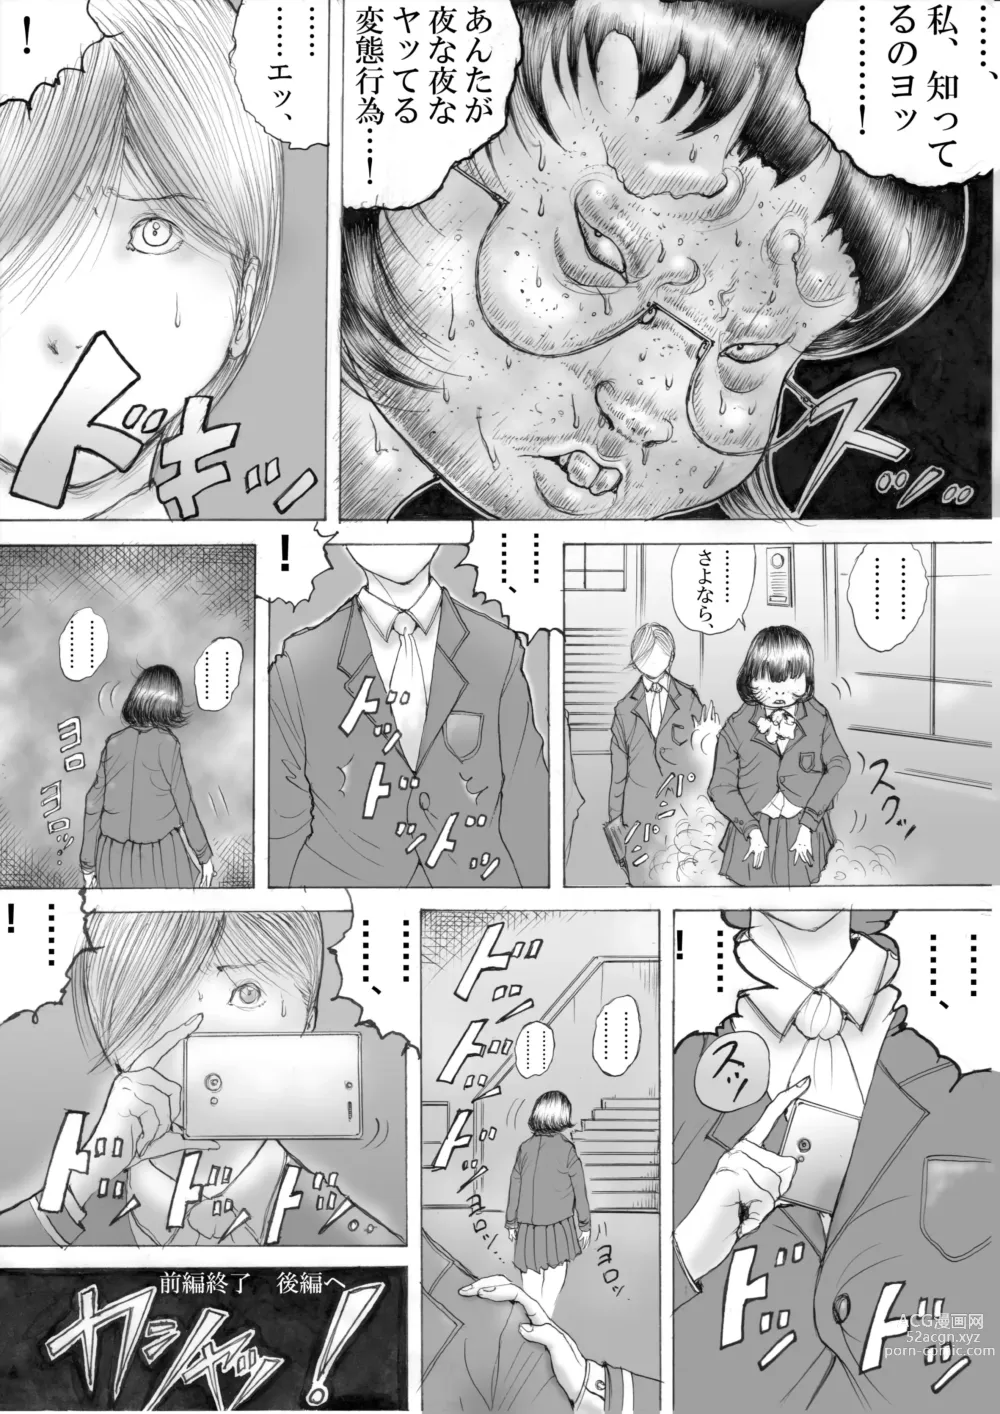 Page 12 of doujinshi Horror Manga 11